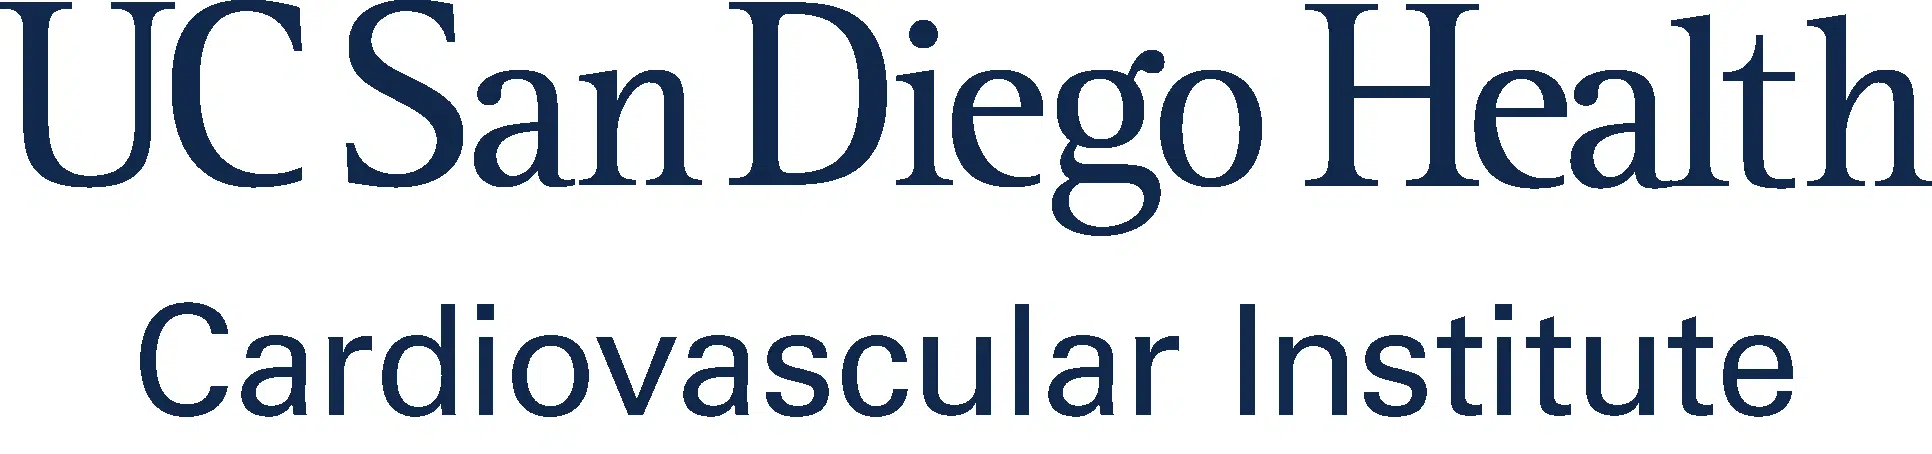 UC San Diego Health Cardiovascular Institute